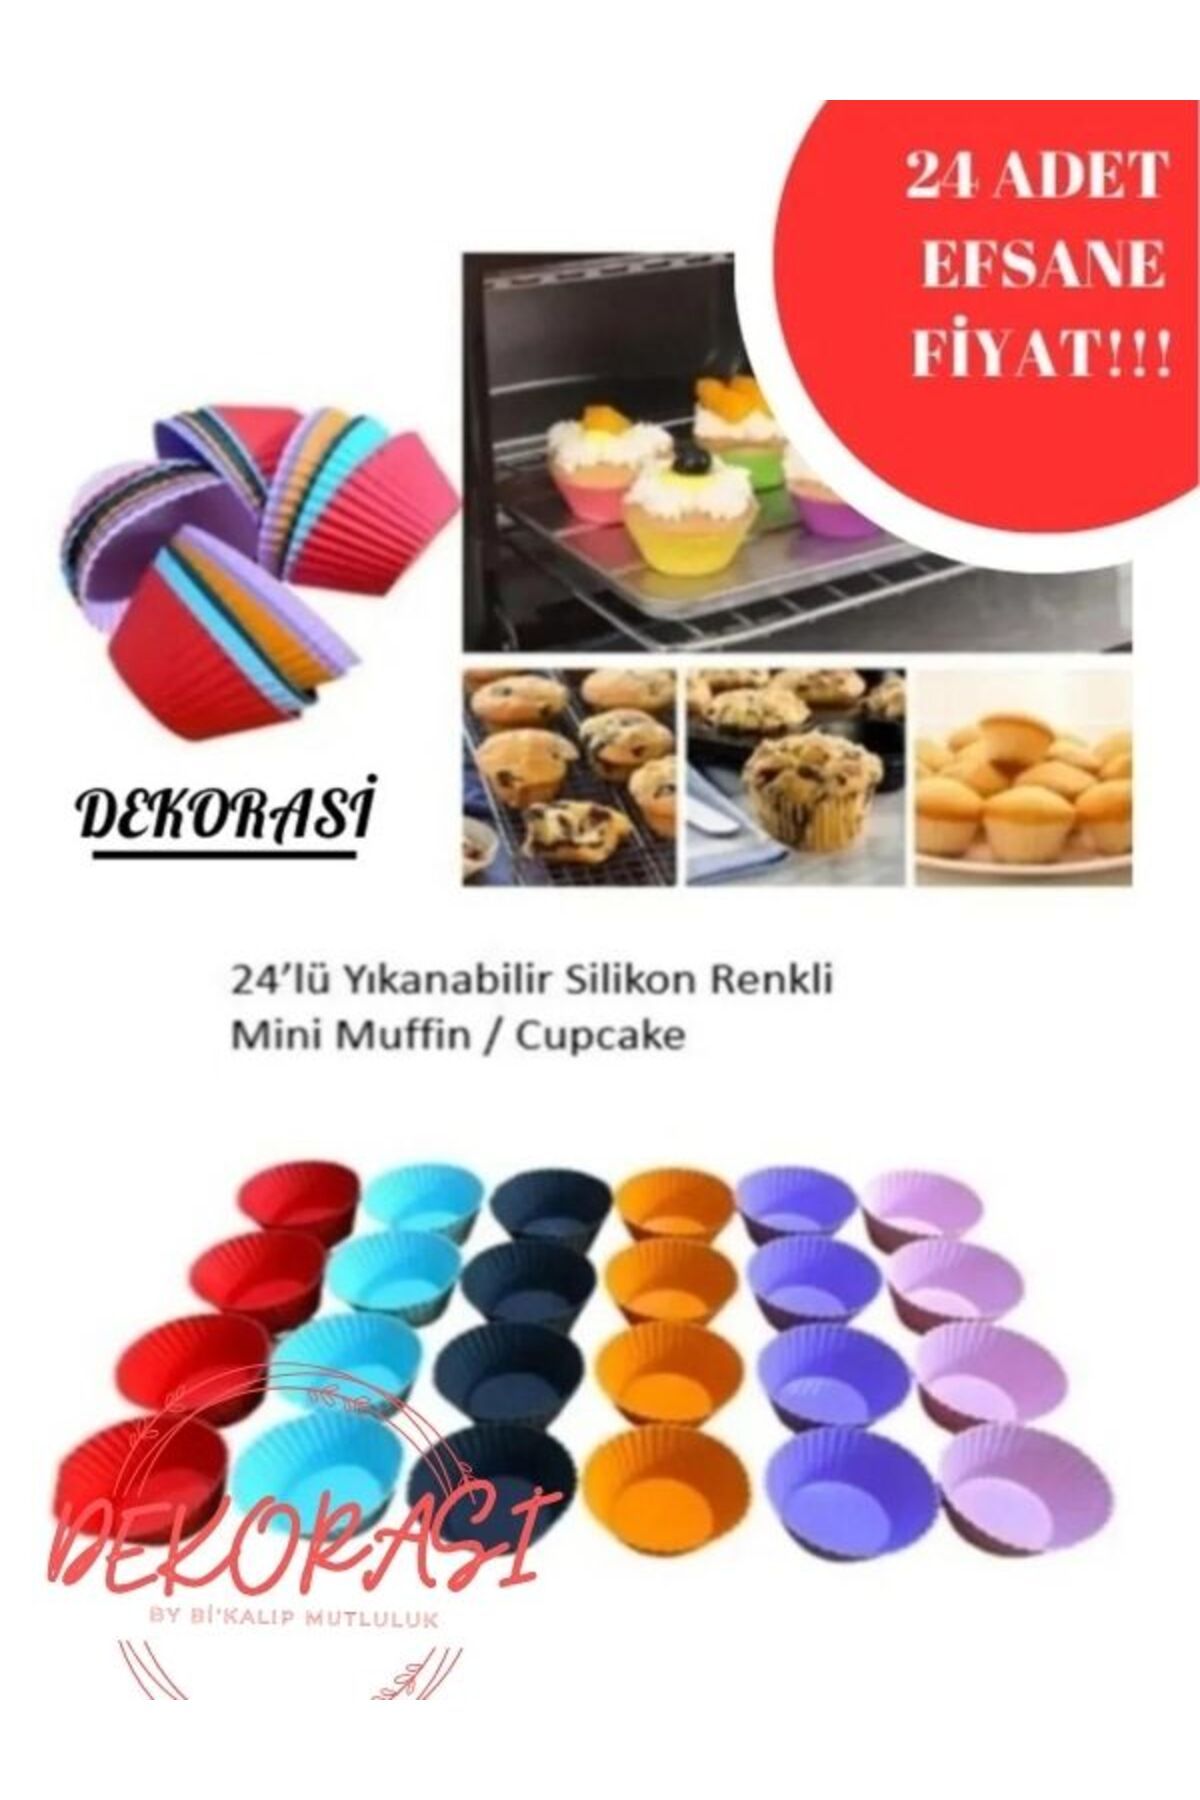 Dekorasi 24’lü Yıkanabilir Mini Tırtıklı Muffin Pişirme Kalıbı, Cupcake, Hamur Işi Renkli Kap